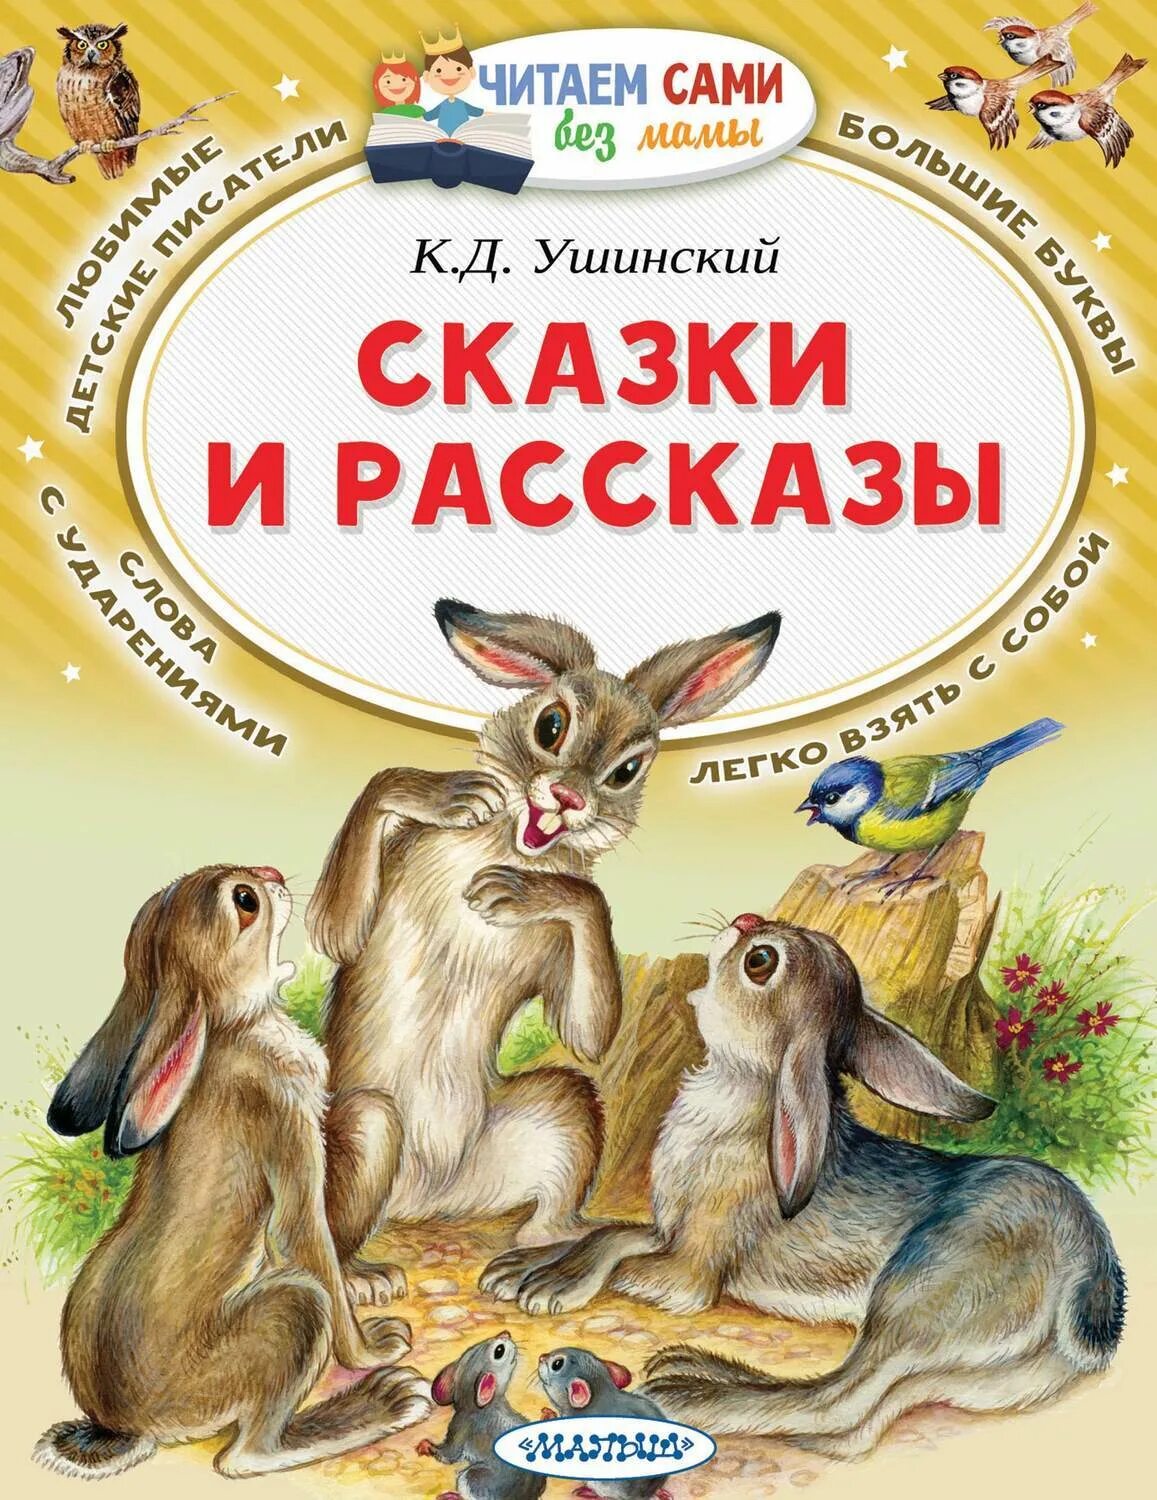 Чтение произведений о детях. Ушинский, к.д. рассказы и сказки книга.